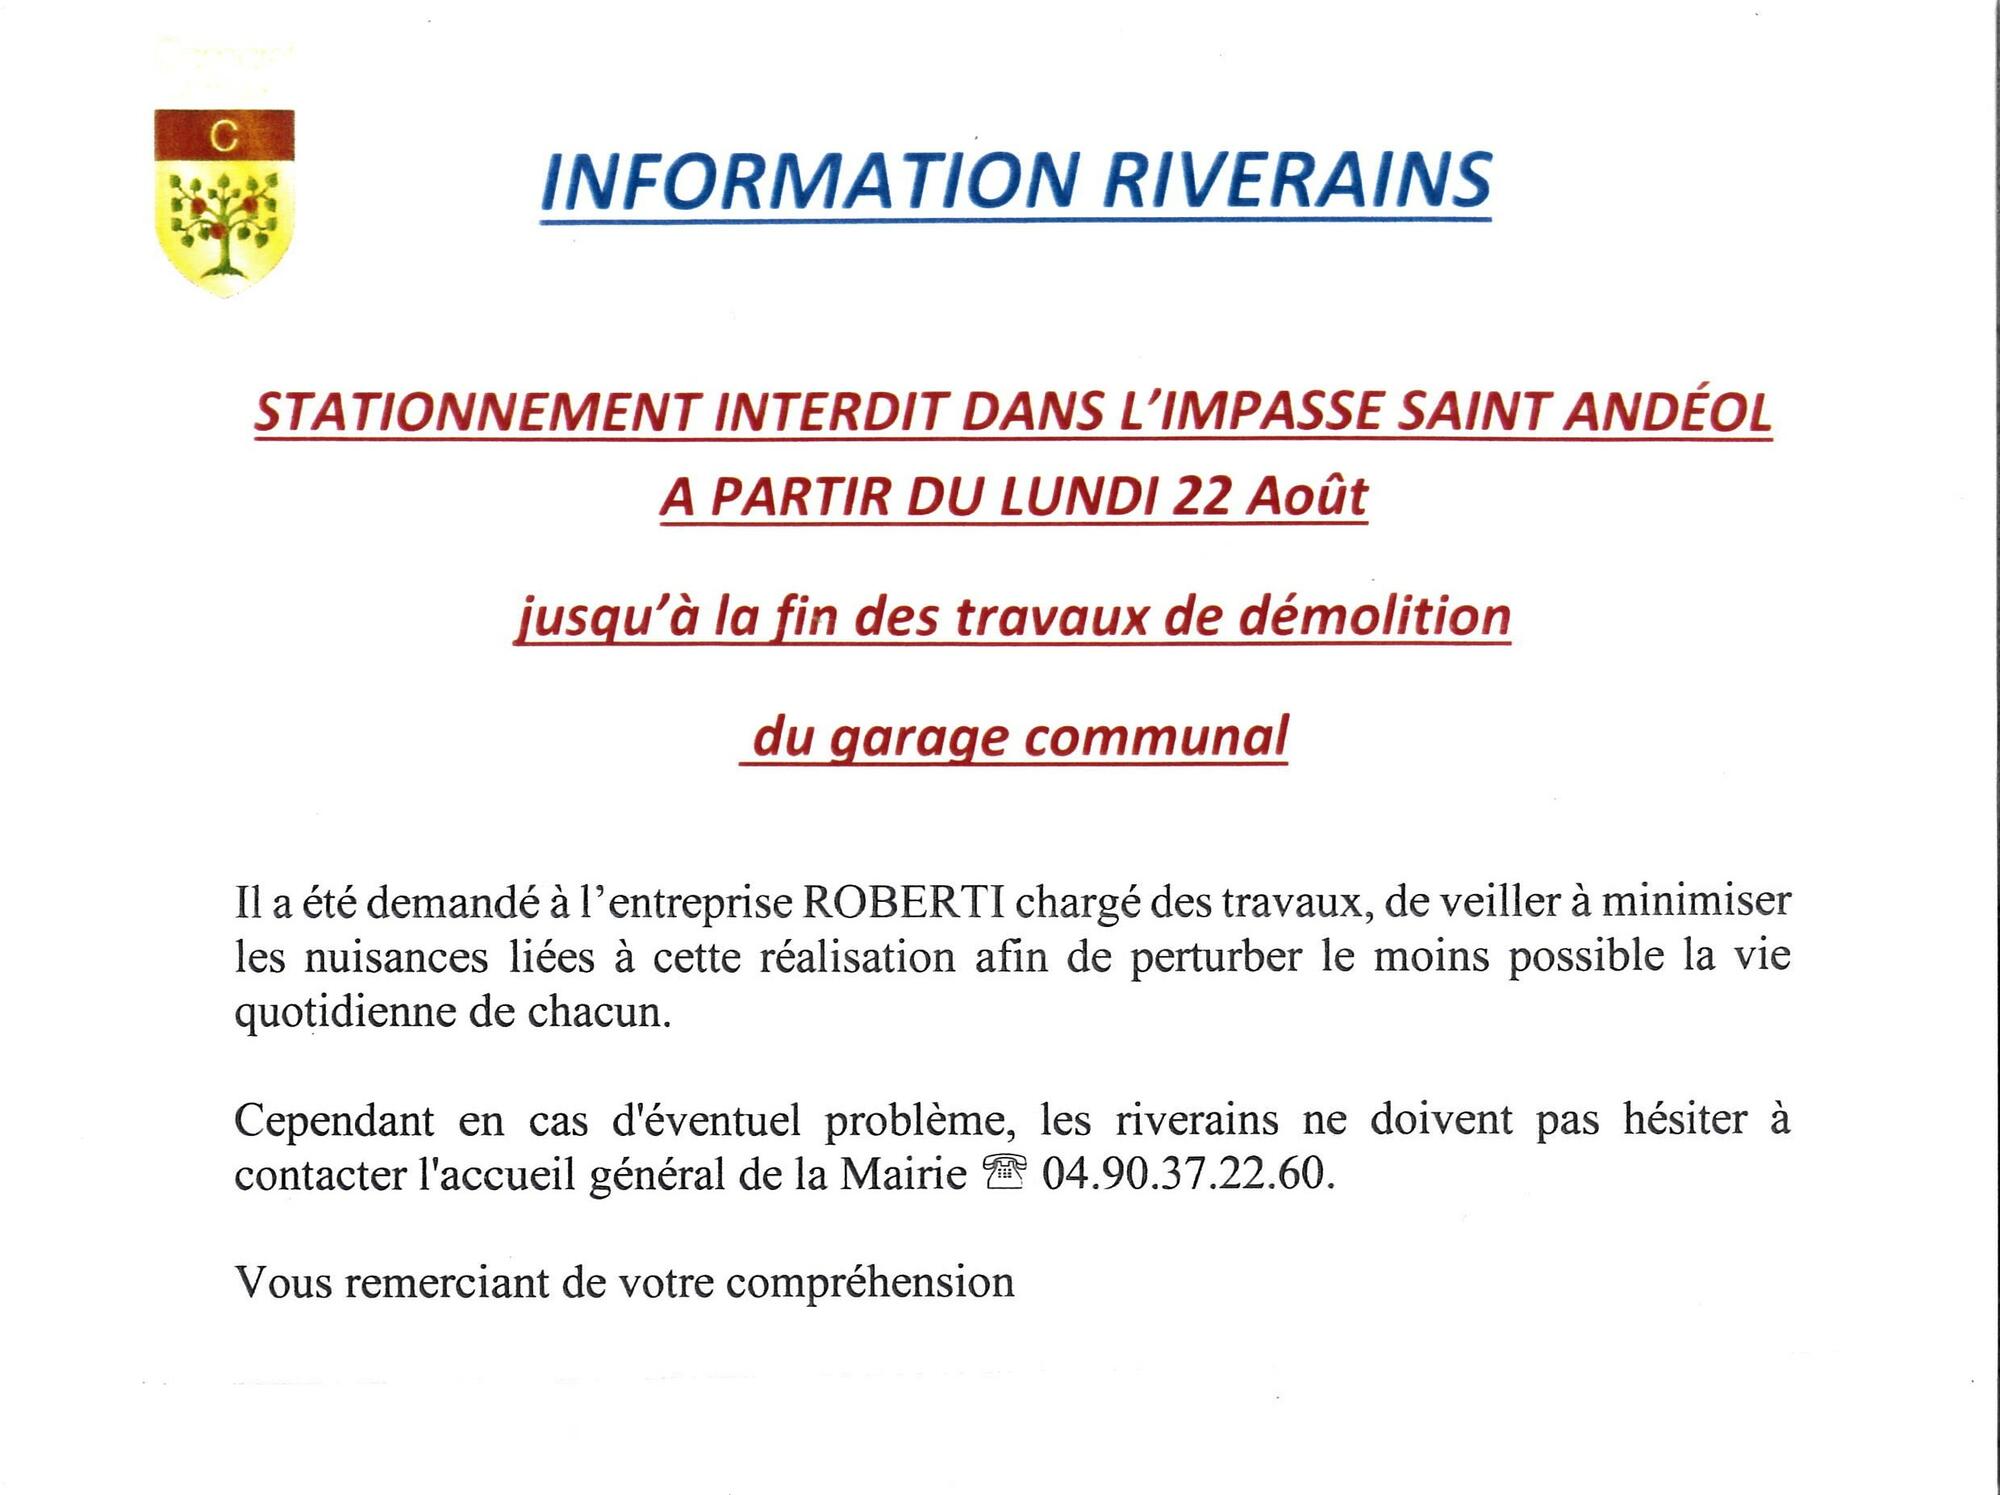 Démolition du garage municipal impasse Saint Andéol : information riverains